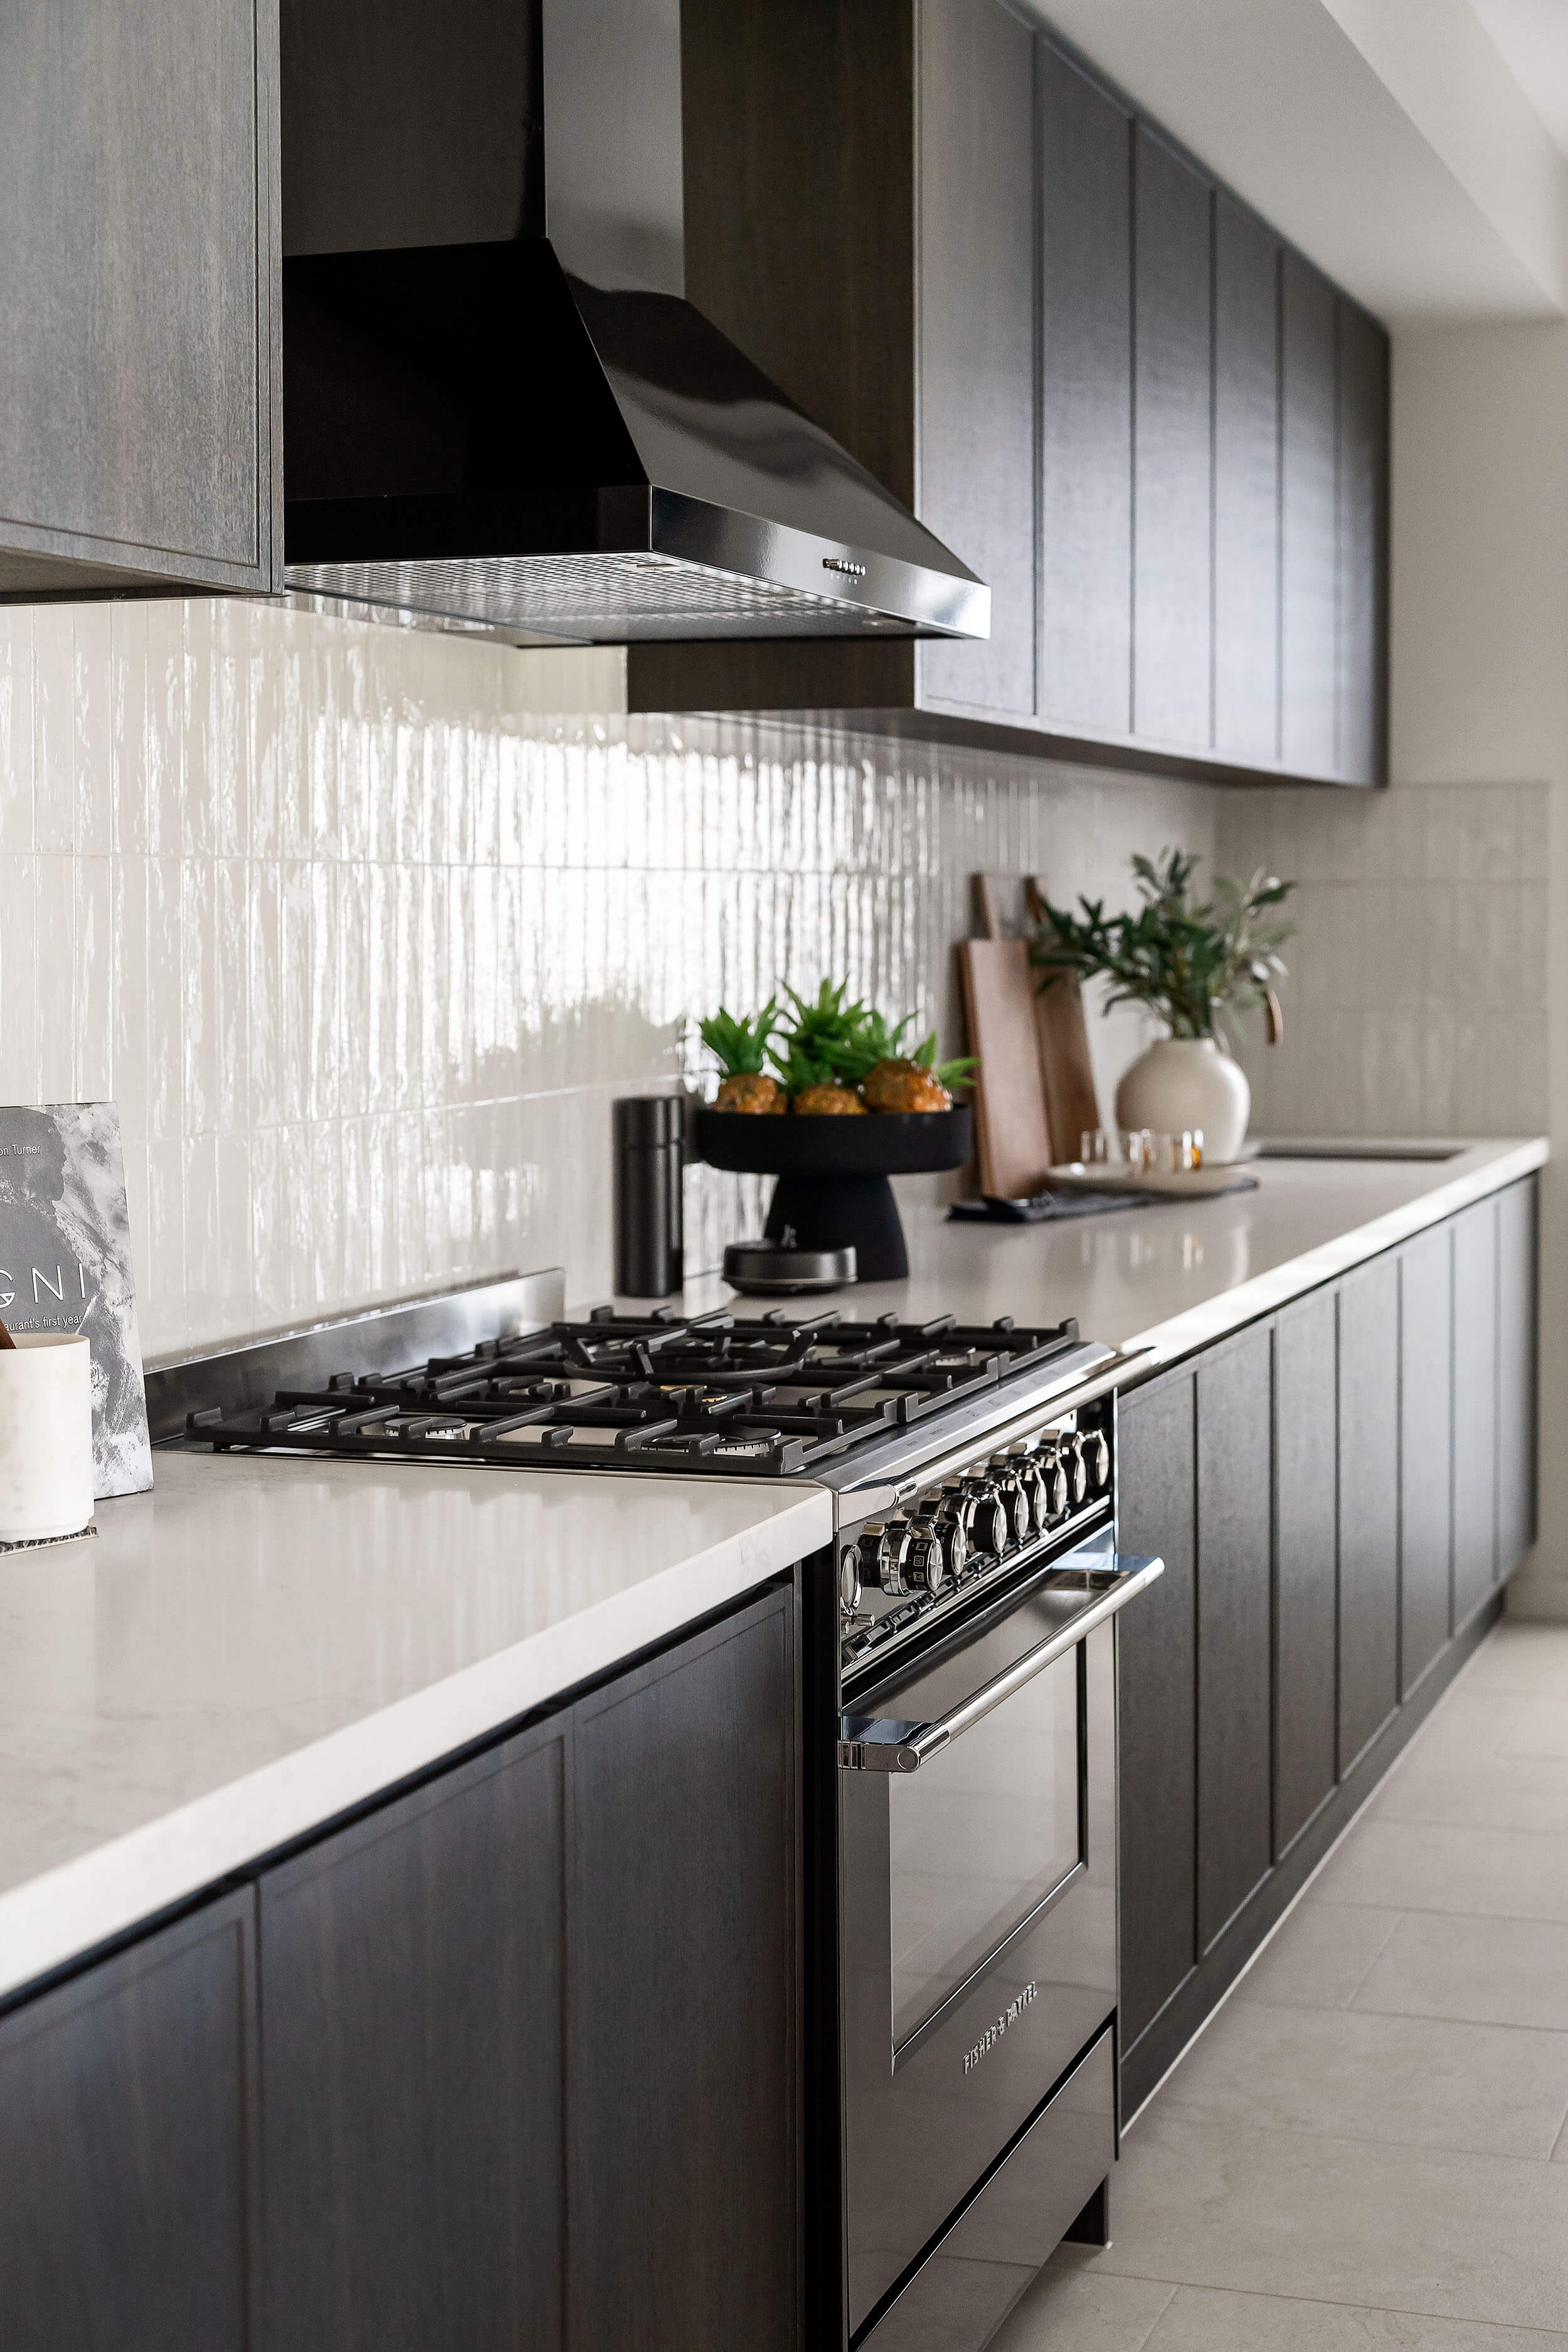 Riviera_grande_kitchen_one_storey_home_design